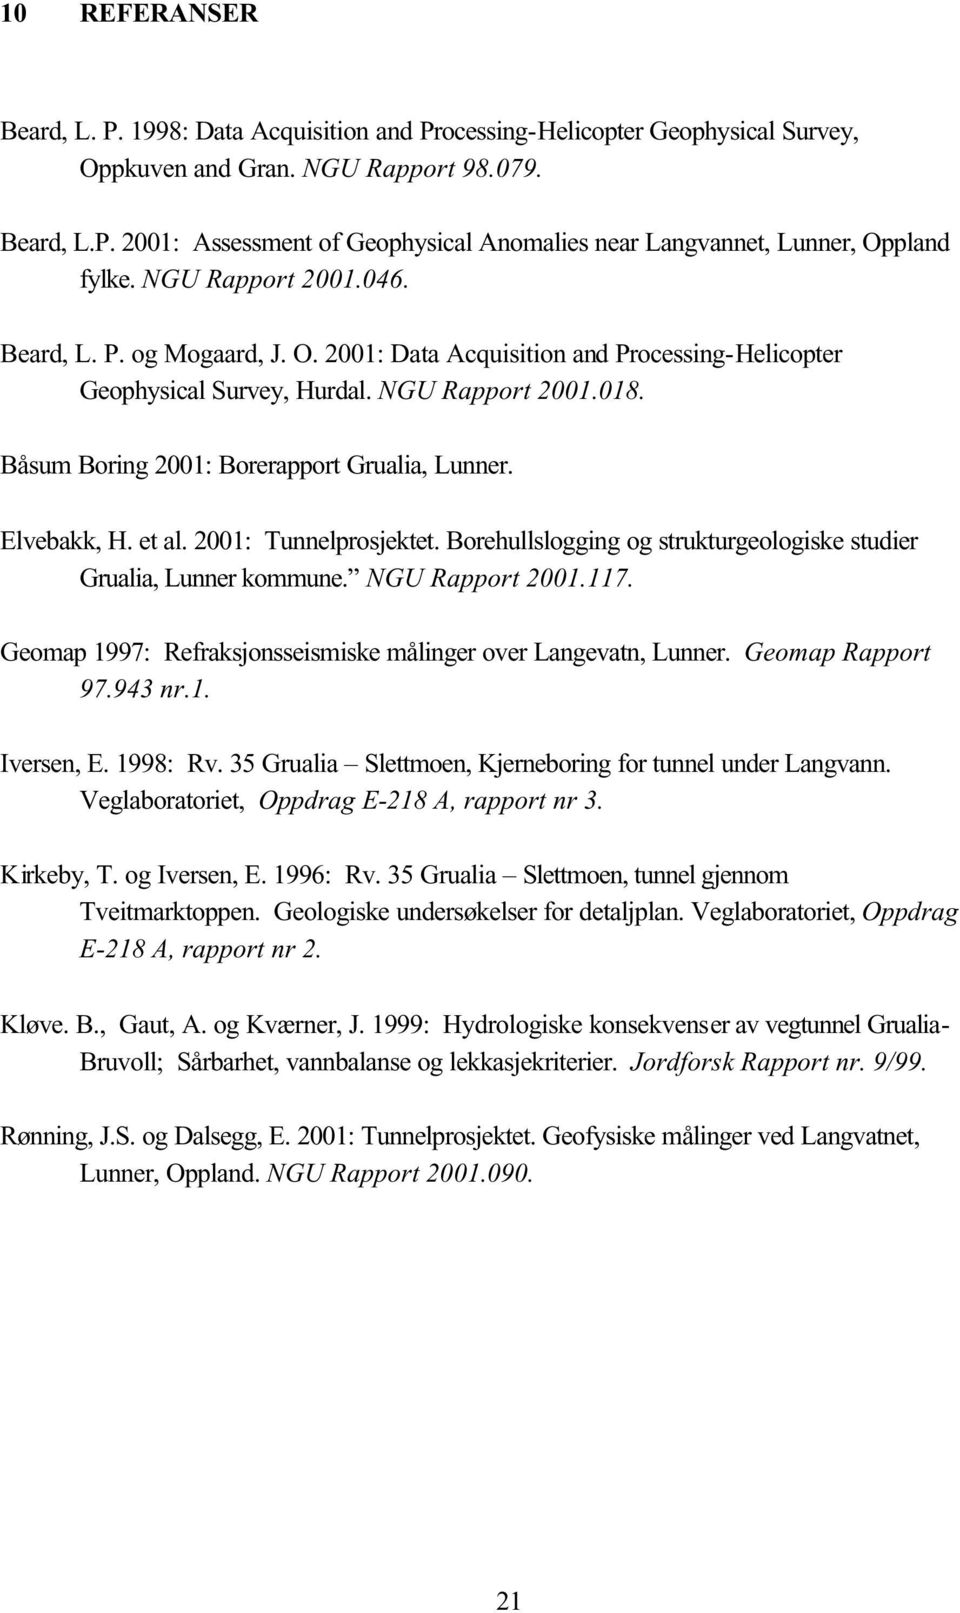 Elvebakk, H. et al. 2001: Tunnelprosjektet. Borehullslogging og strukturgeologiske studier Grualia, Lunner kommune. NGU Rapport 2001.117.